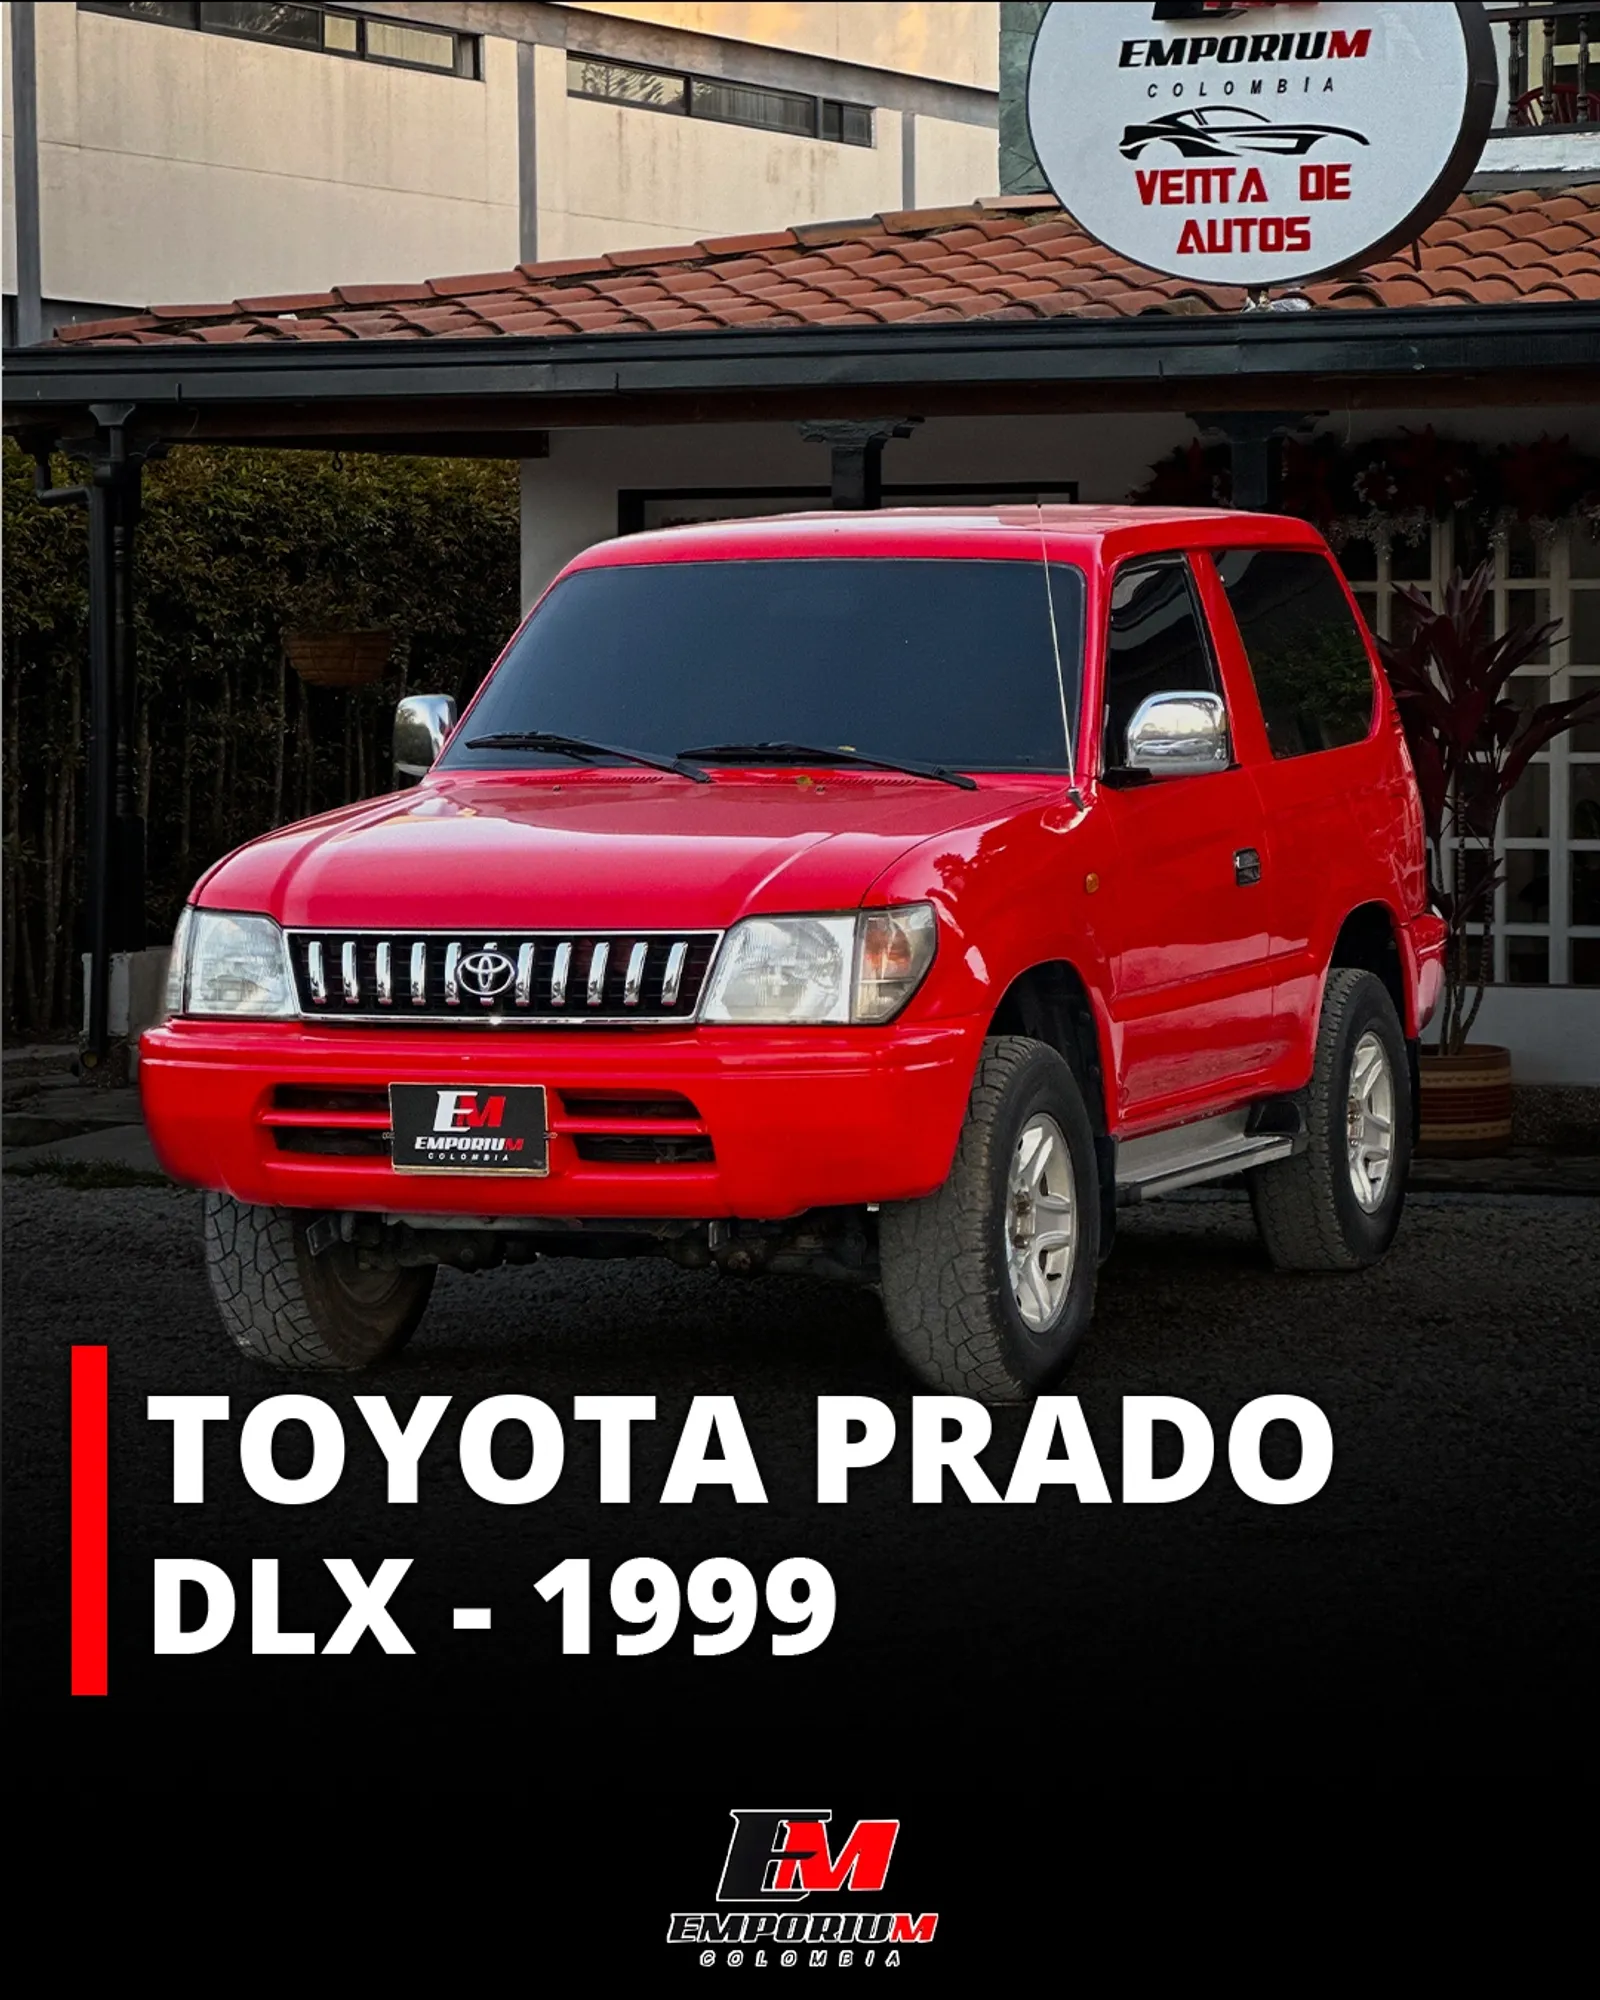 Toyota Prado DLX 1999.